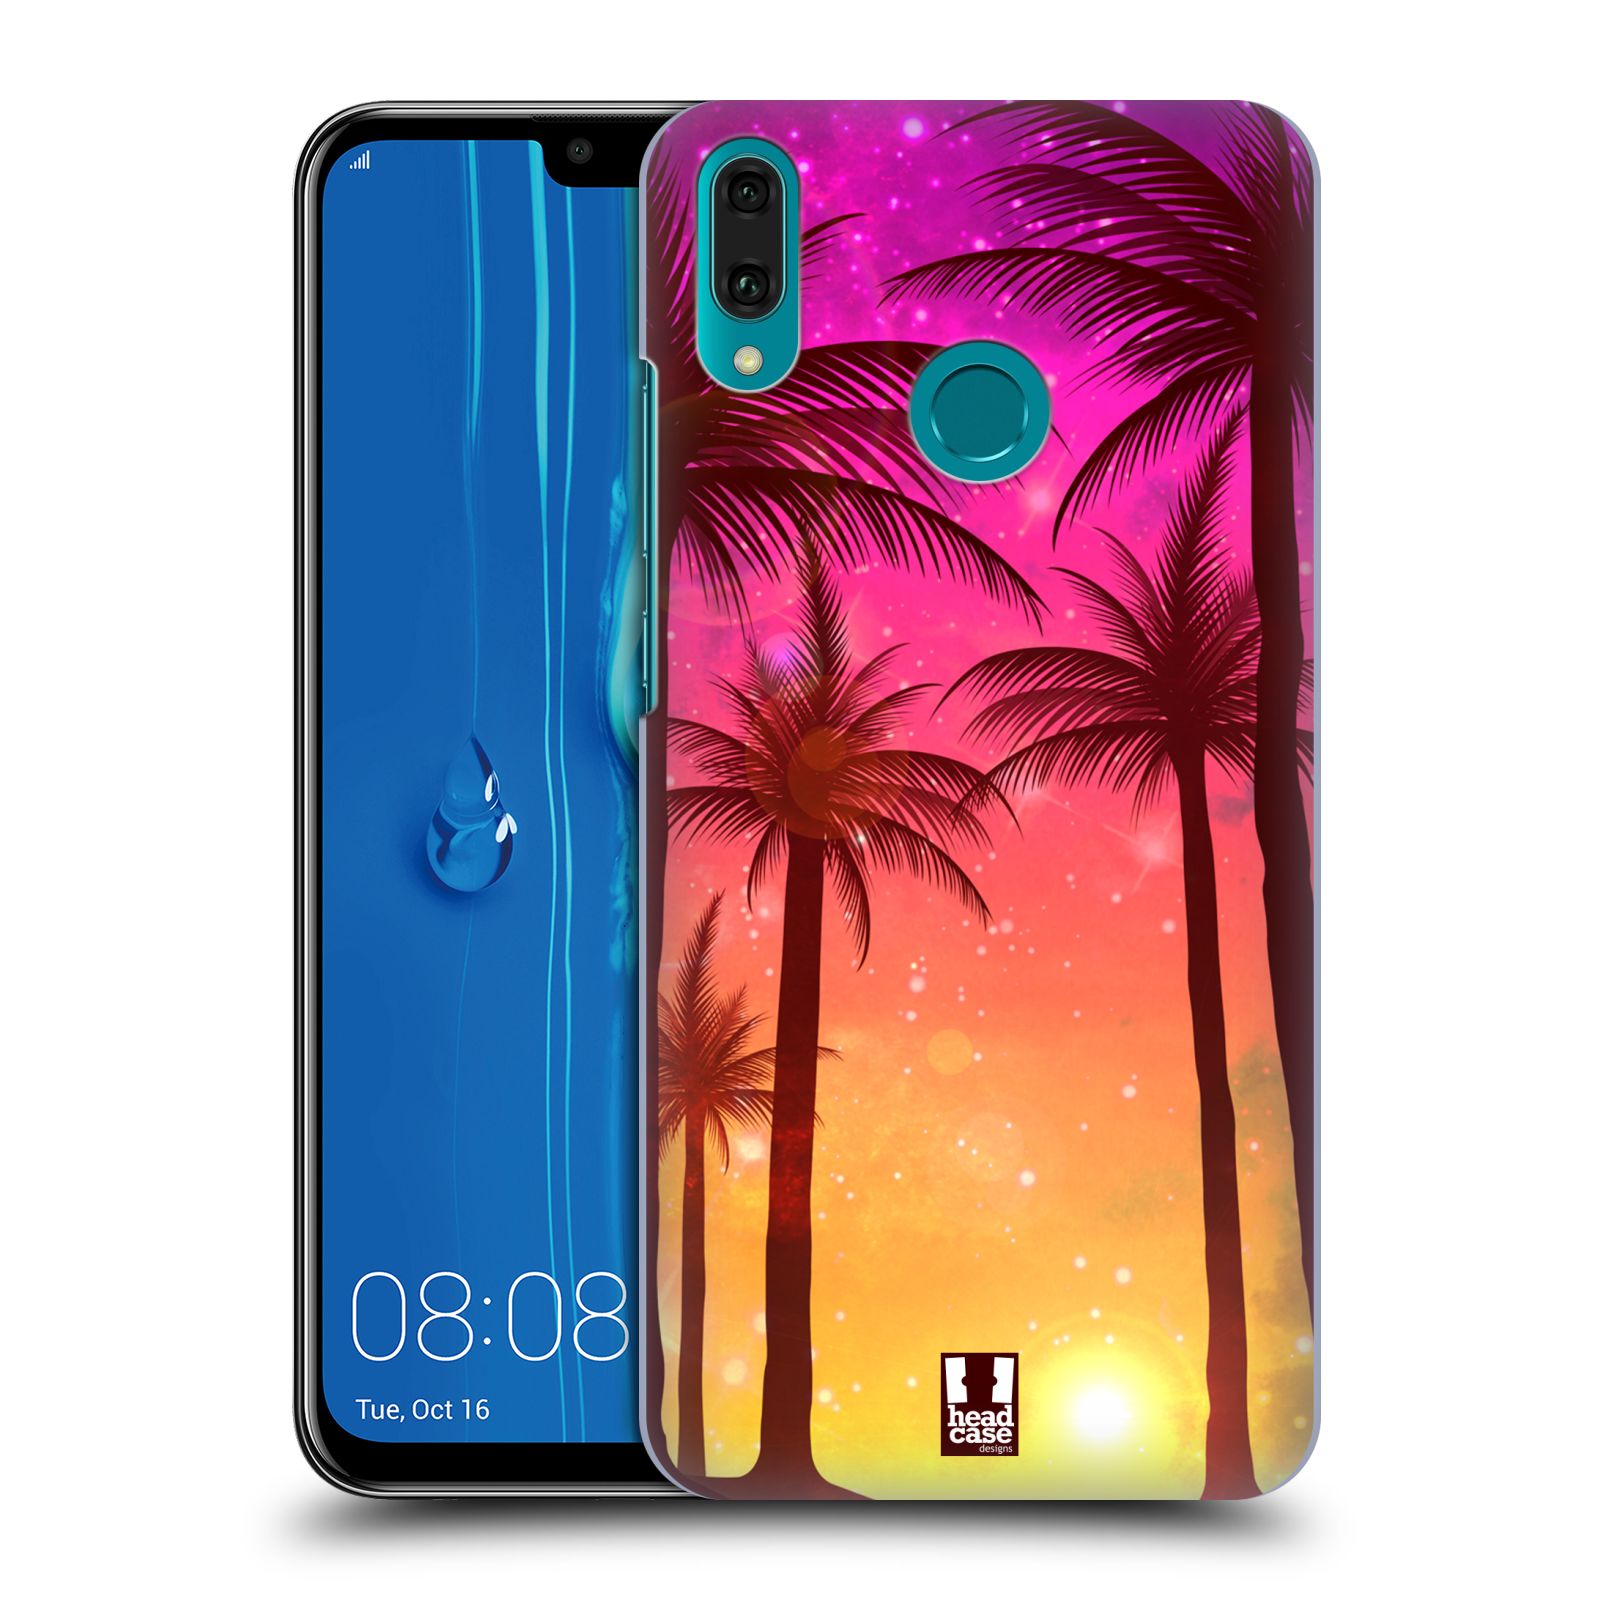 Pouzdro na mobil Huawei Y9 2019 - HEAD CASE - vzor Kreslený motiv silueta moře a palmy RŮŽOVÁ